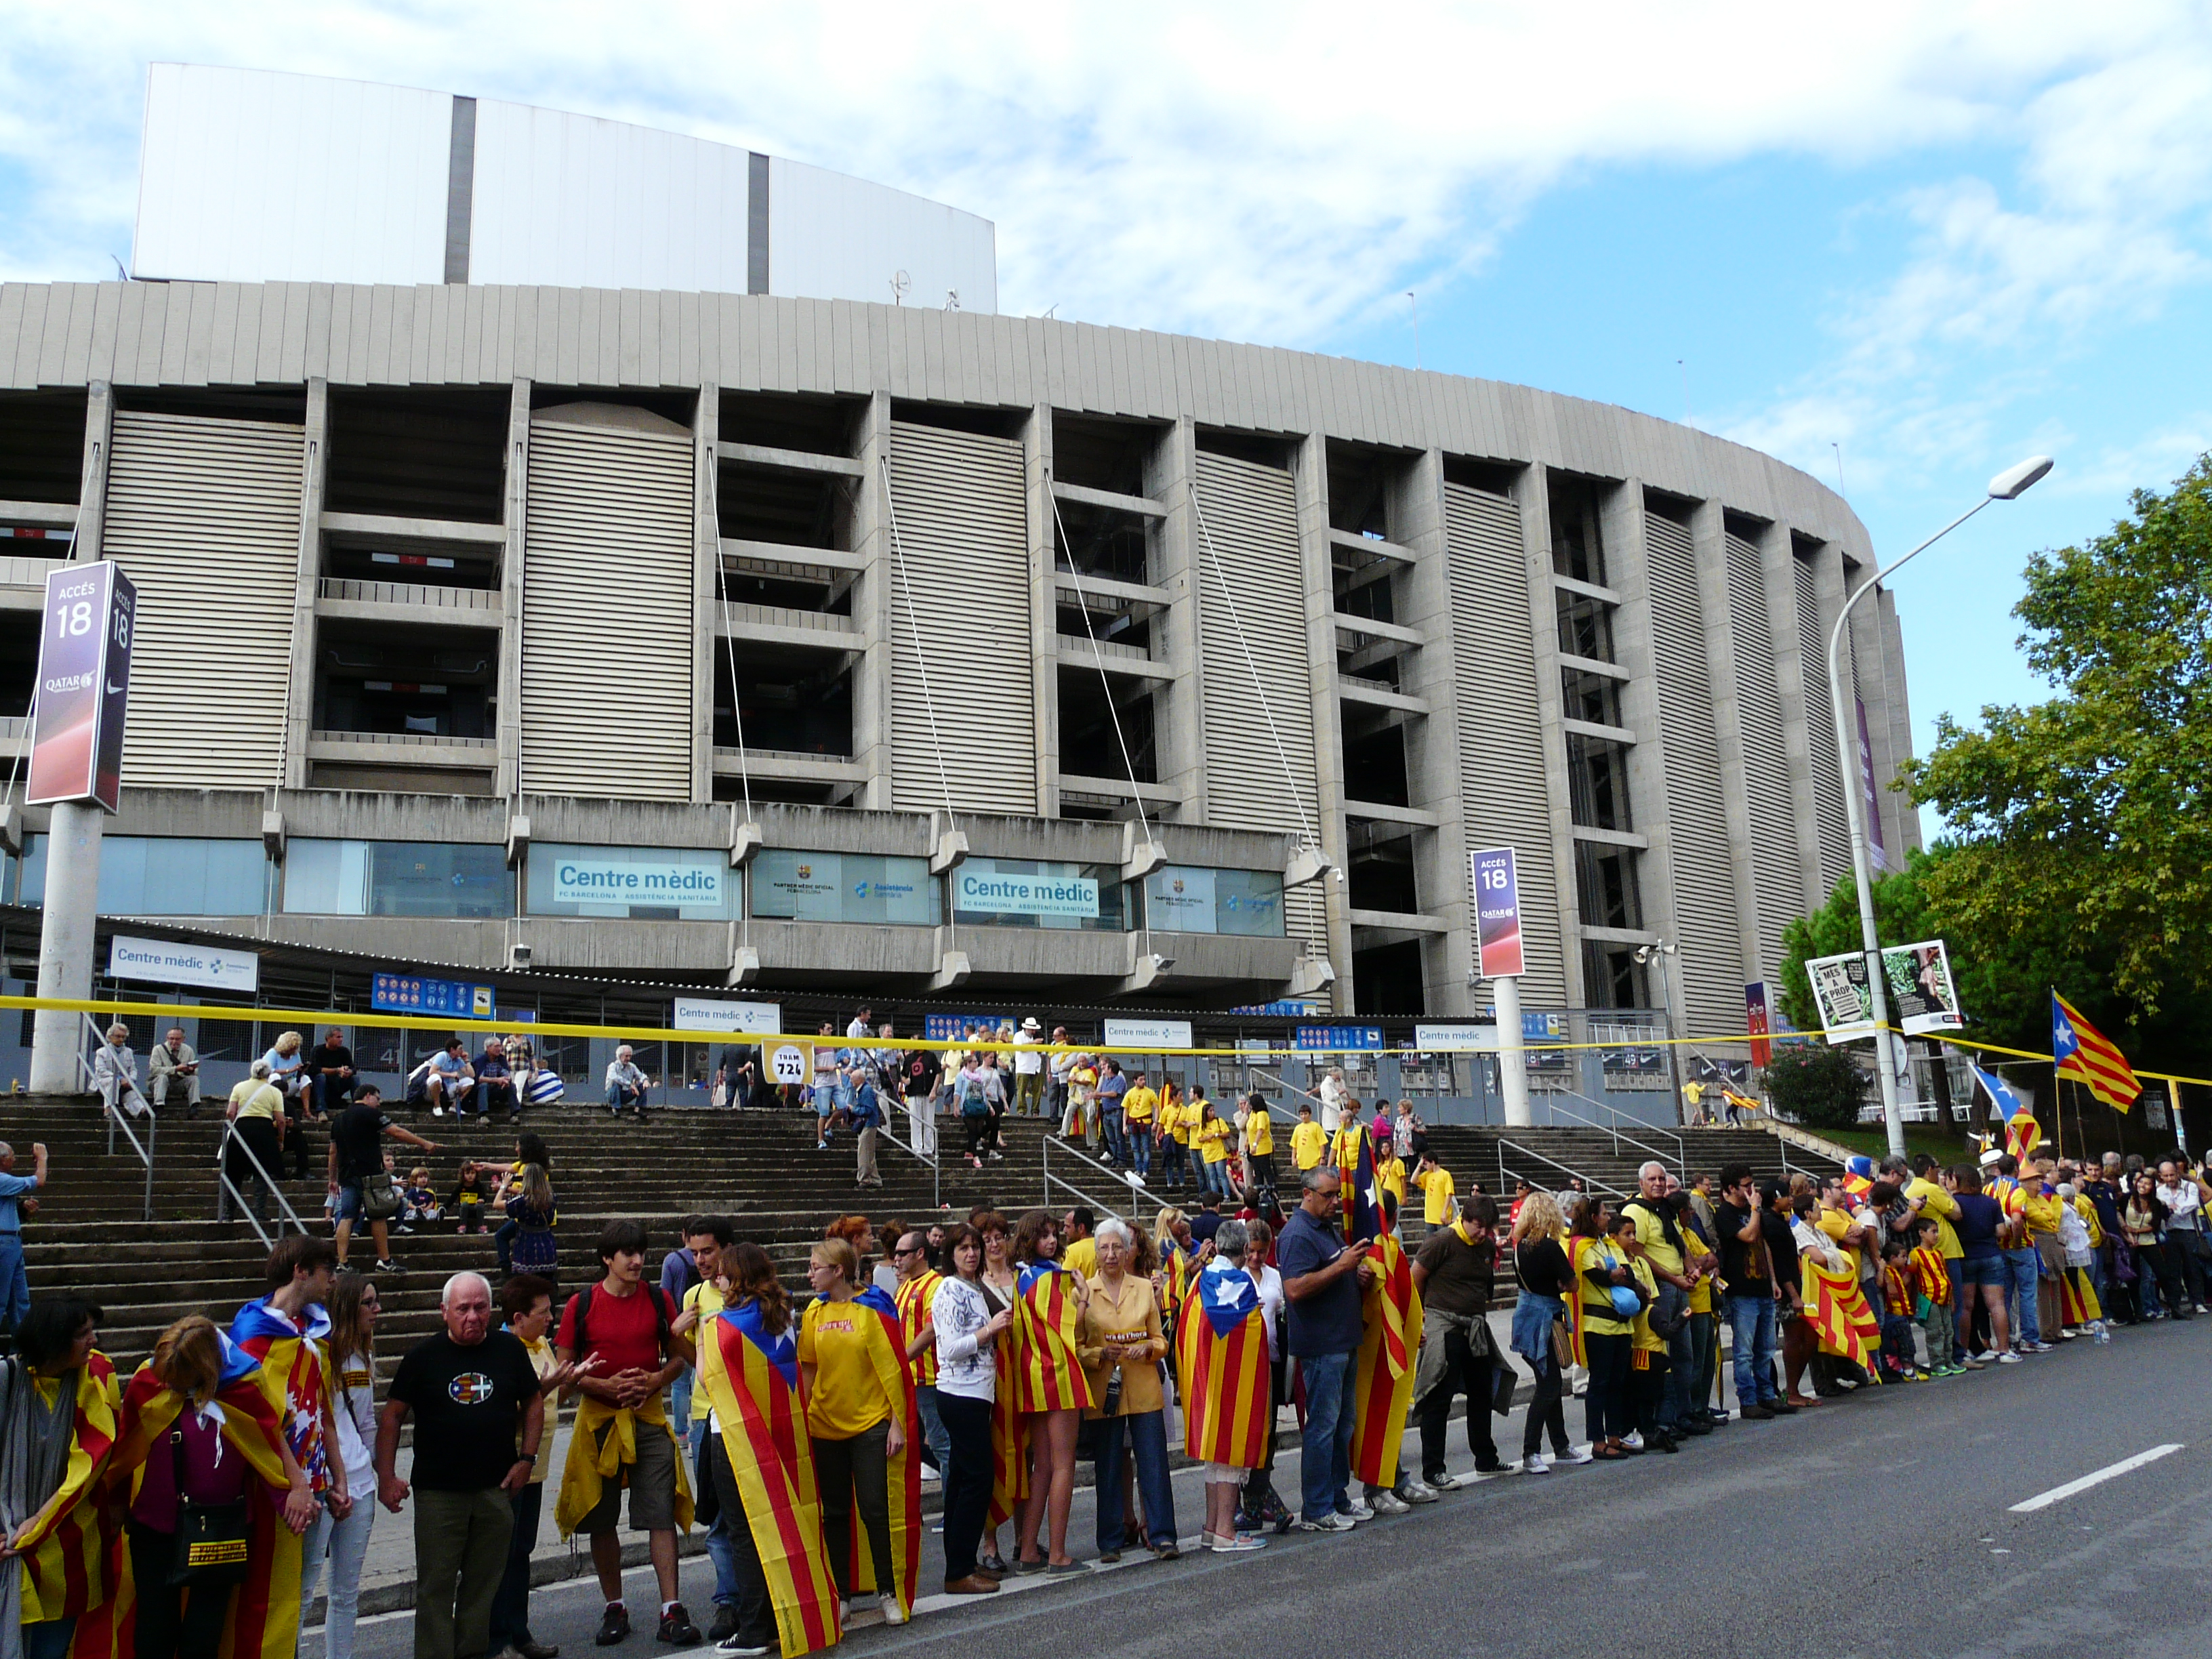 Gente con senyeras espera la cola en el Camp Nou.